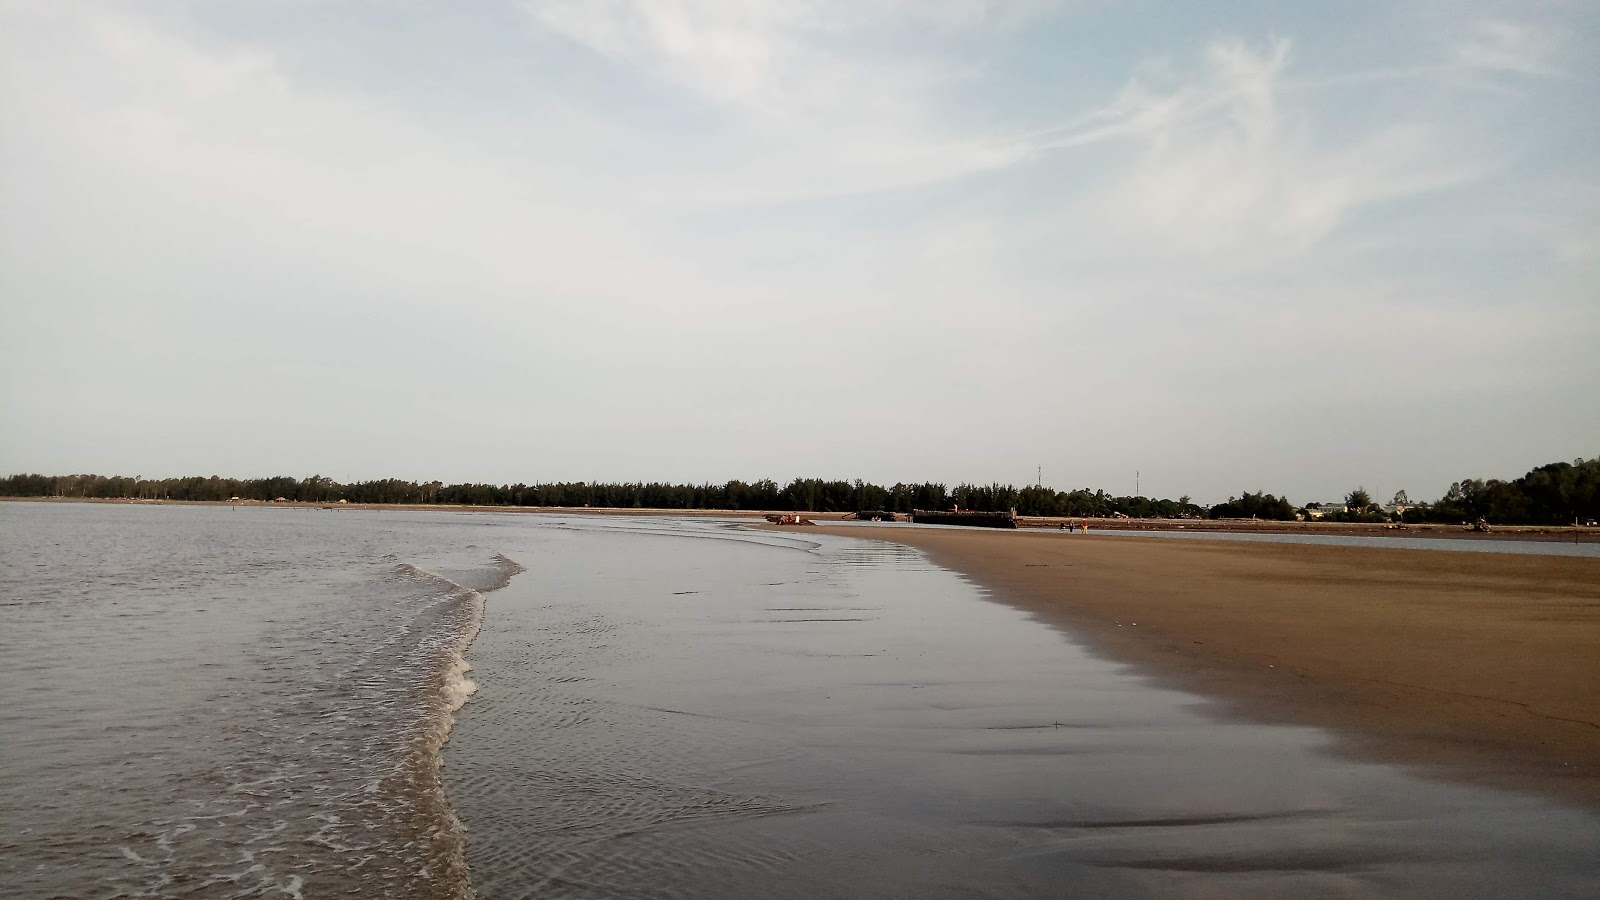 Zdjęcie Vinh Son Sea z przestronna plaża